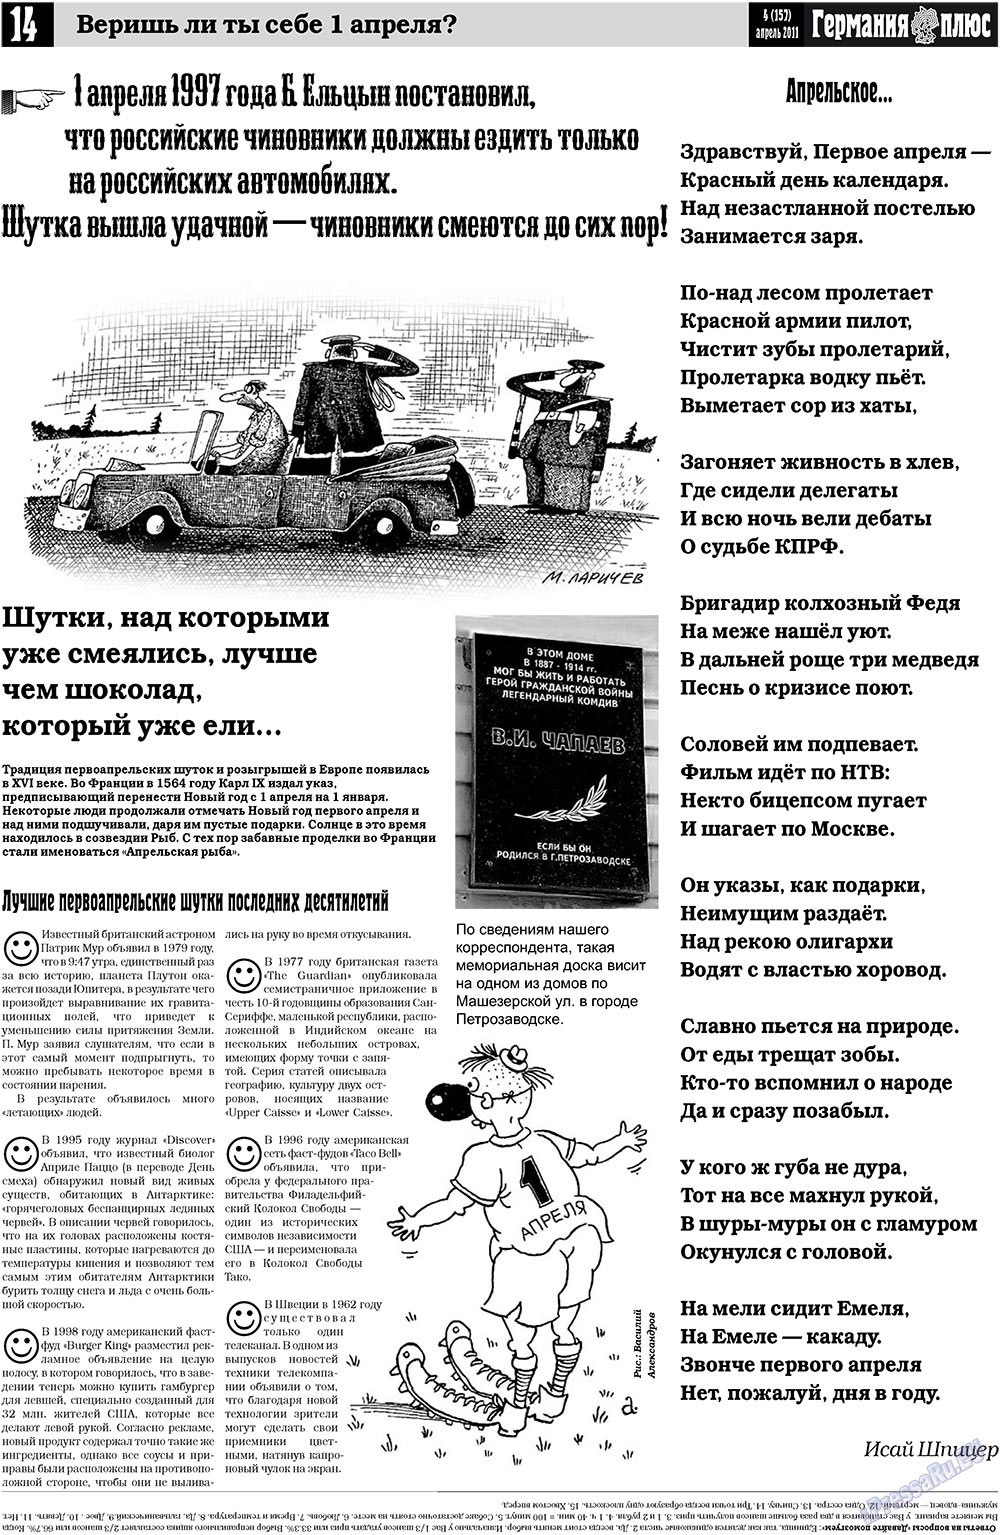 Германия плюс, газета. 2011 №4 стр.14